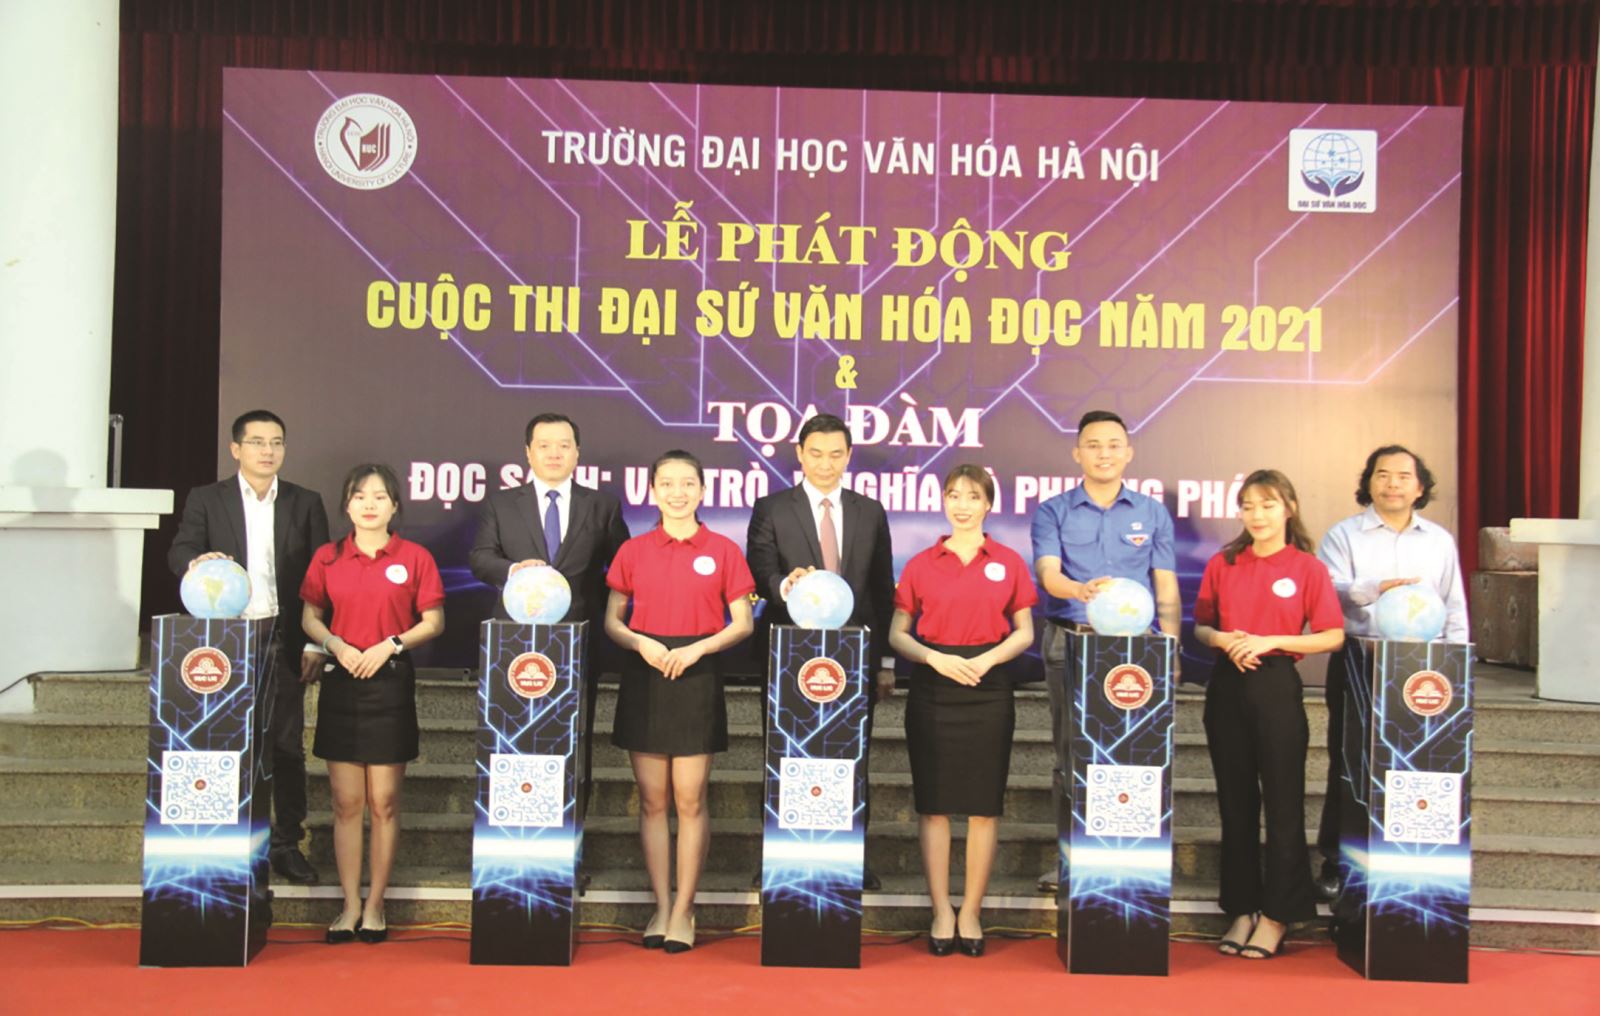 Trường Đại học Văn hóa Hà Nội phát động Cuộc thi Đại sứ Văn hóa đọc vòng sơ khảo năm 2021